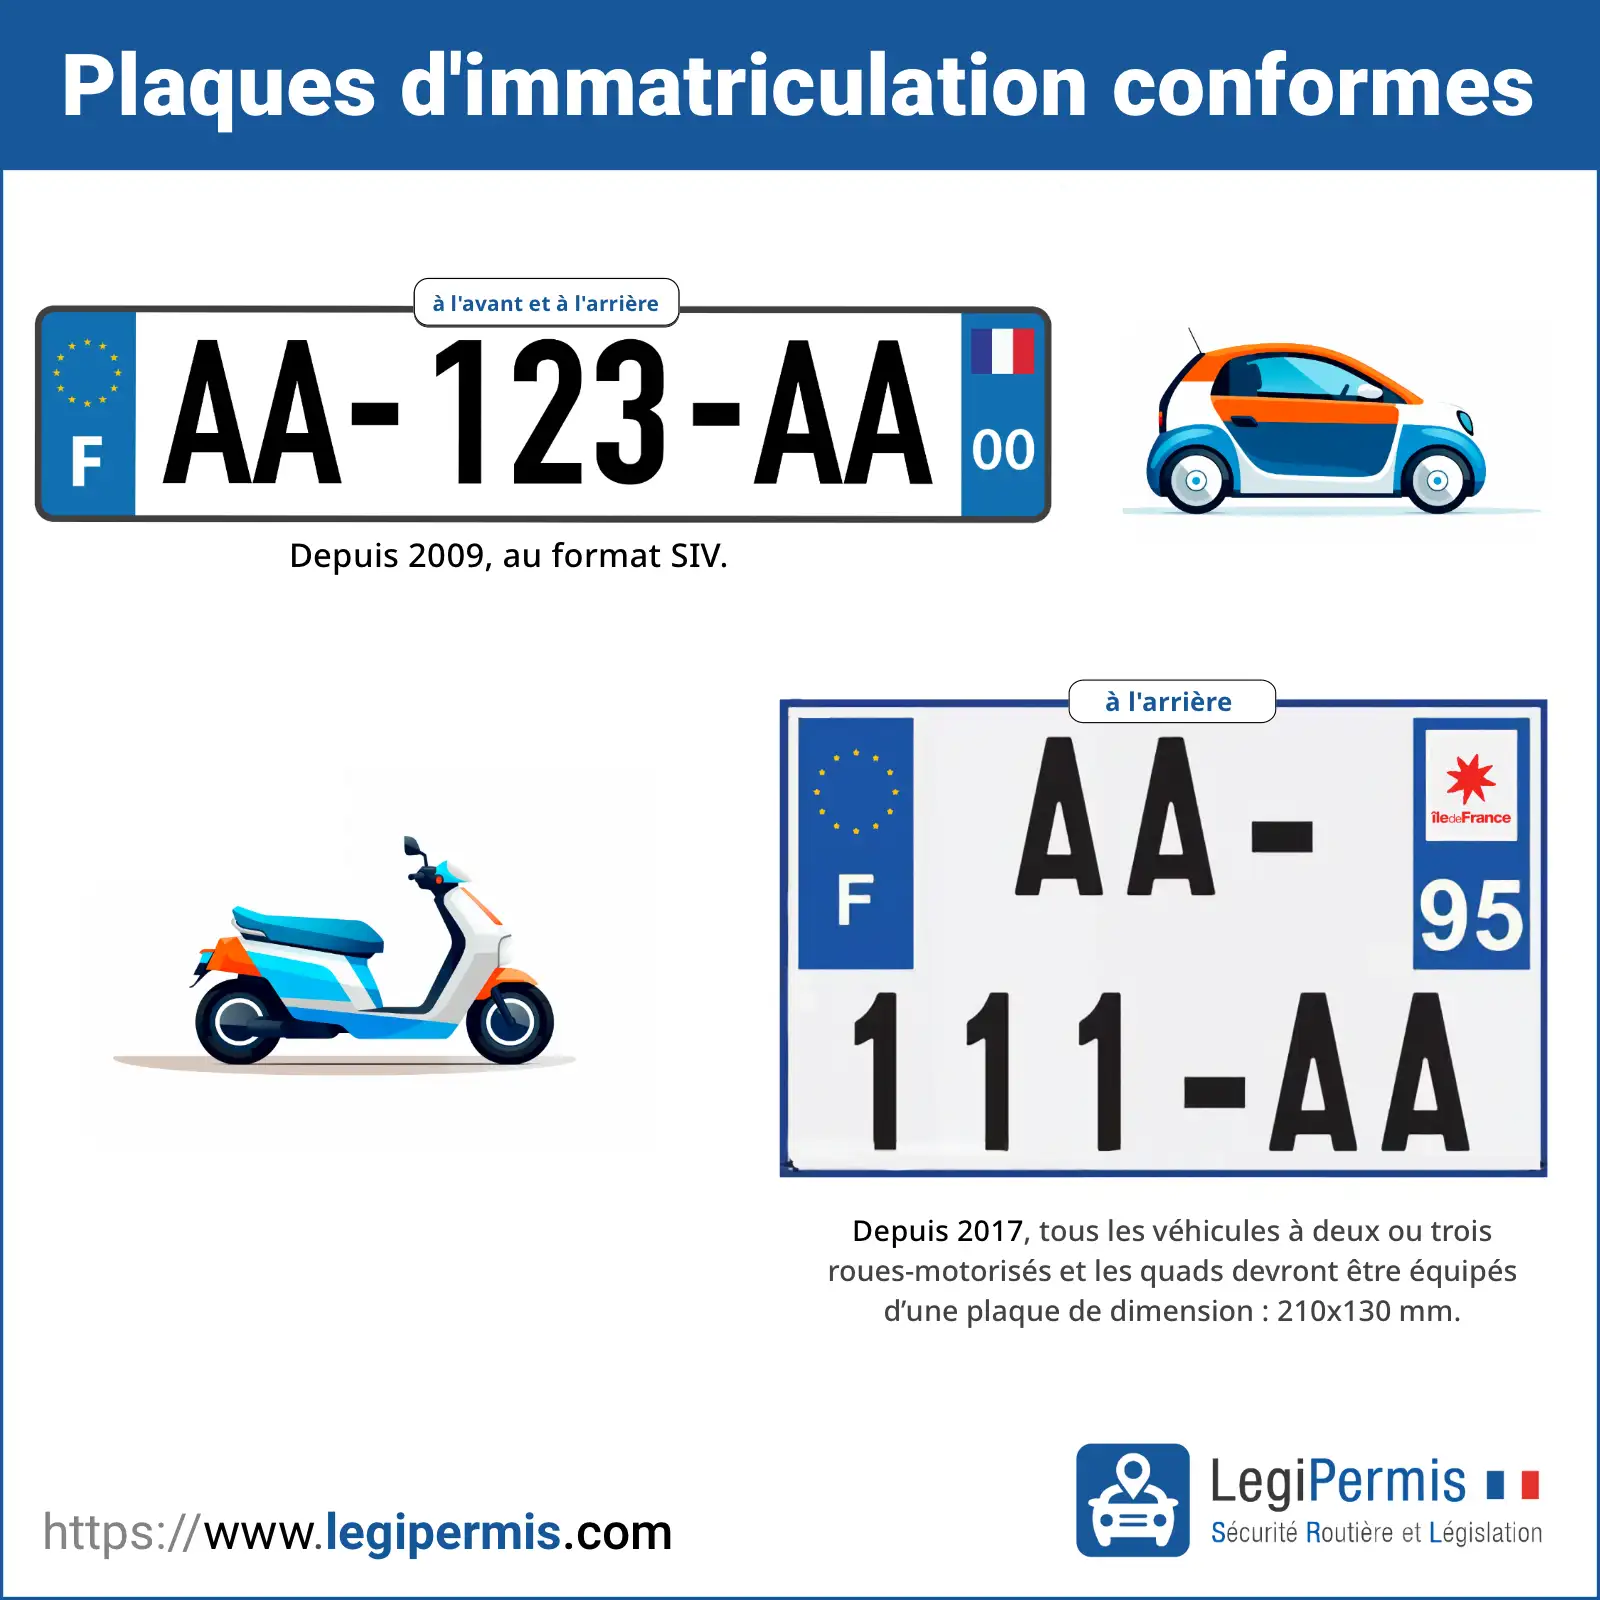 Plaques d'immatriculation conformes pour les voitures légères et les motos en France.